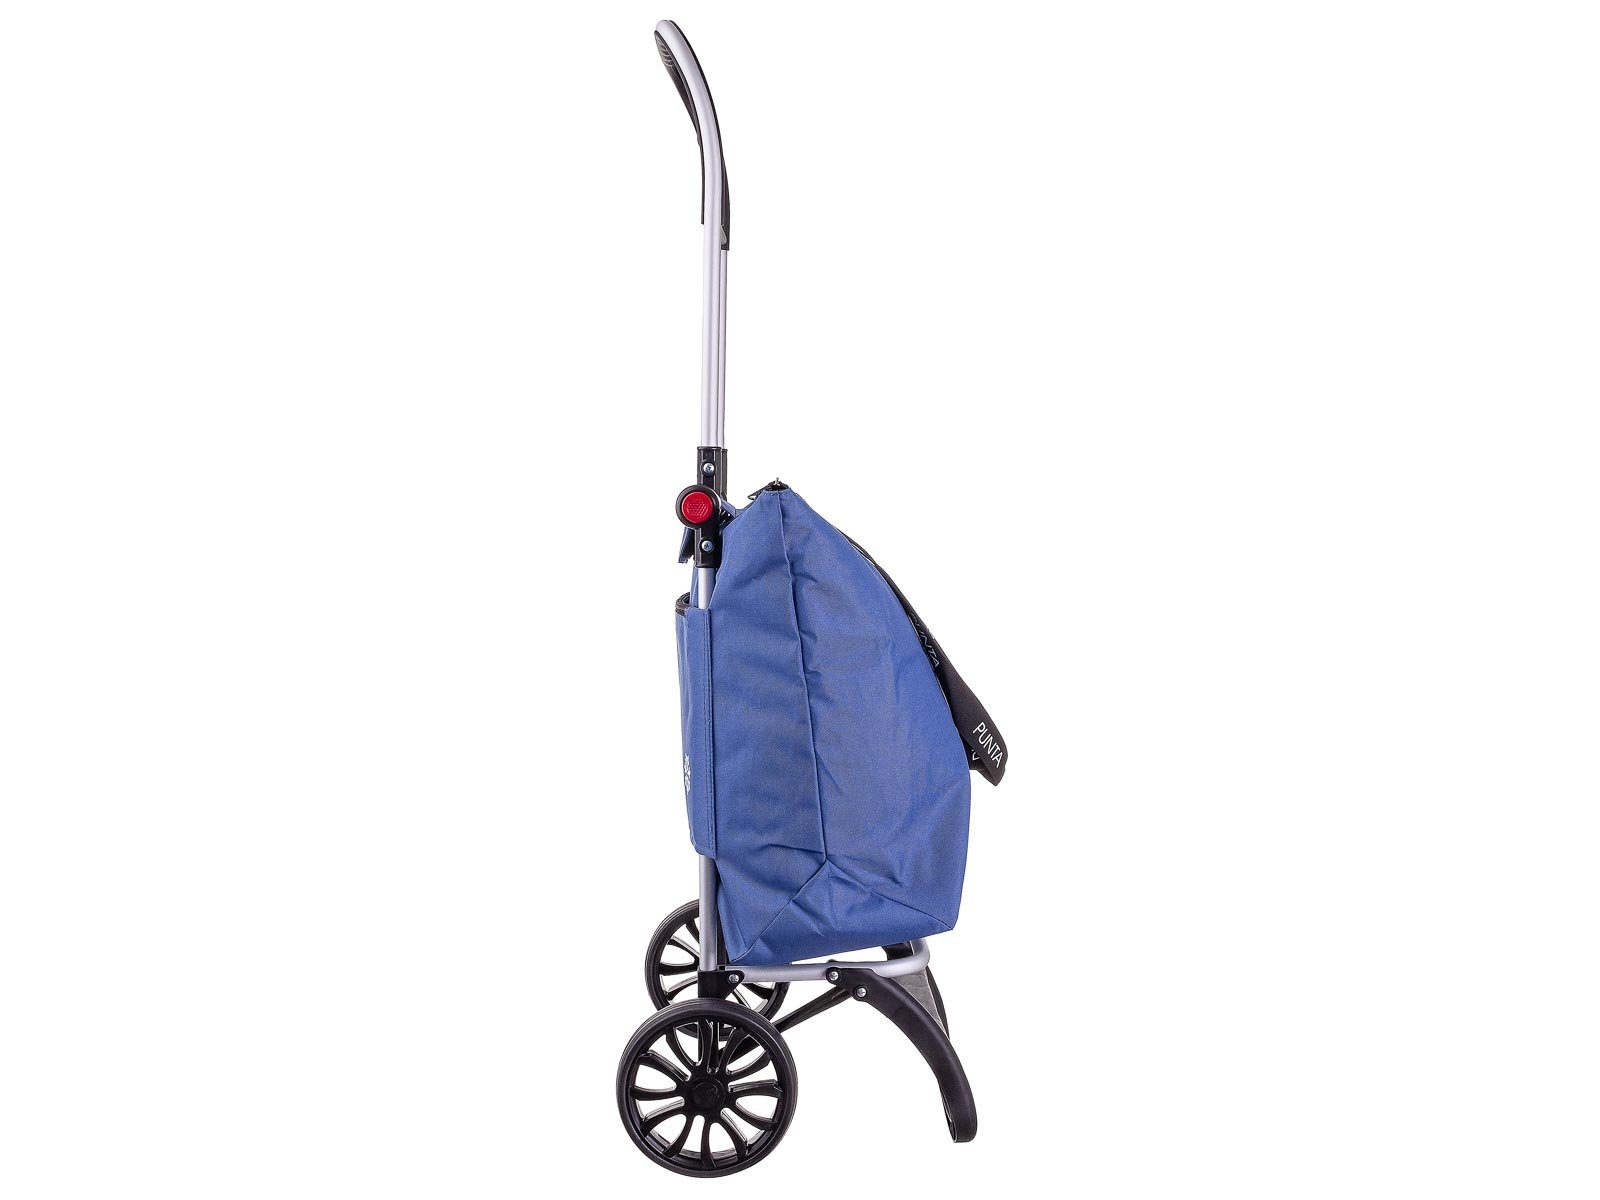 fabrizio® Einkaufstrolley l, 10430 graublau mit Kühlfach, caddy Punta Alu-Shopper 36 Kühlfach